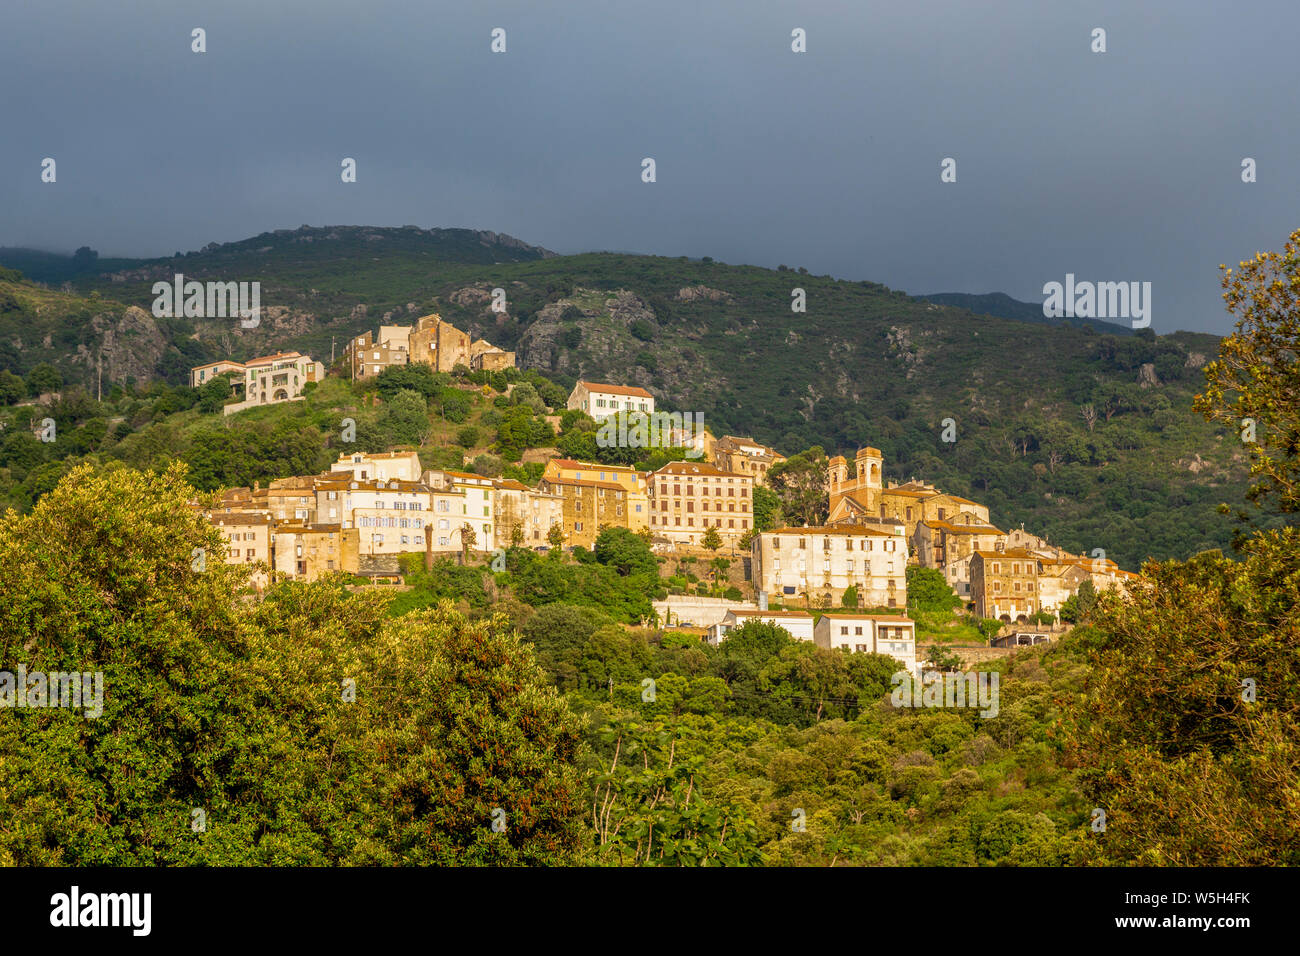 La petite ville montagneuse de Oletta dans le nord de la Corse, France, Europe, Méditerranée Banque D'Images